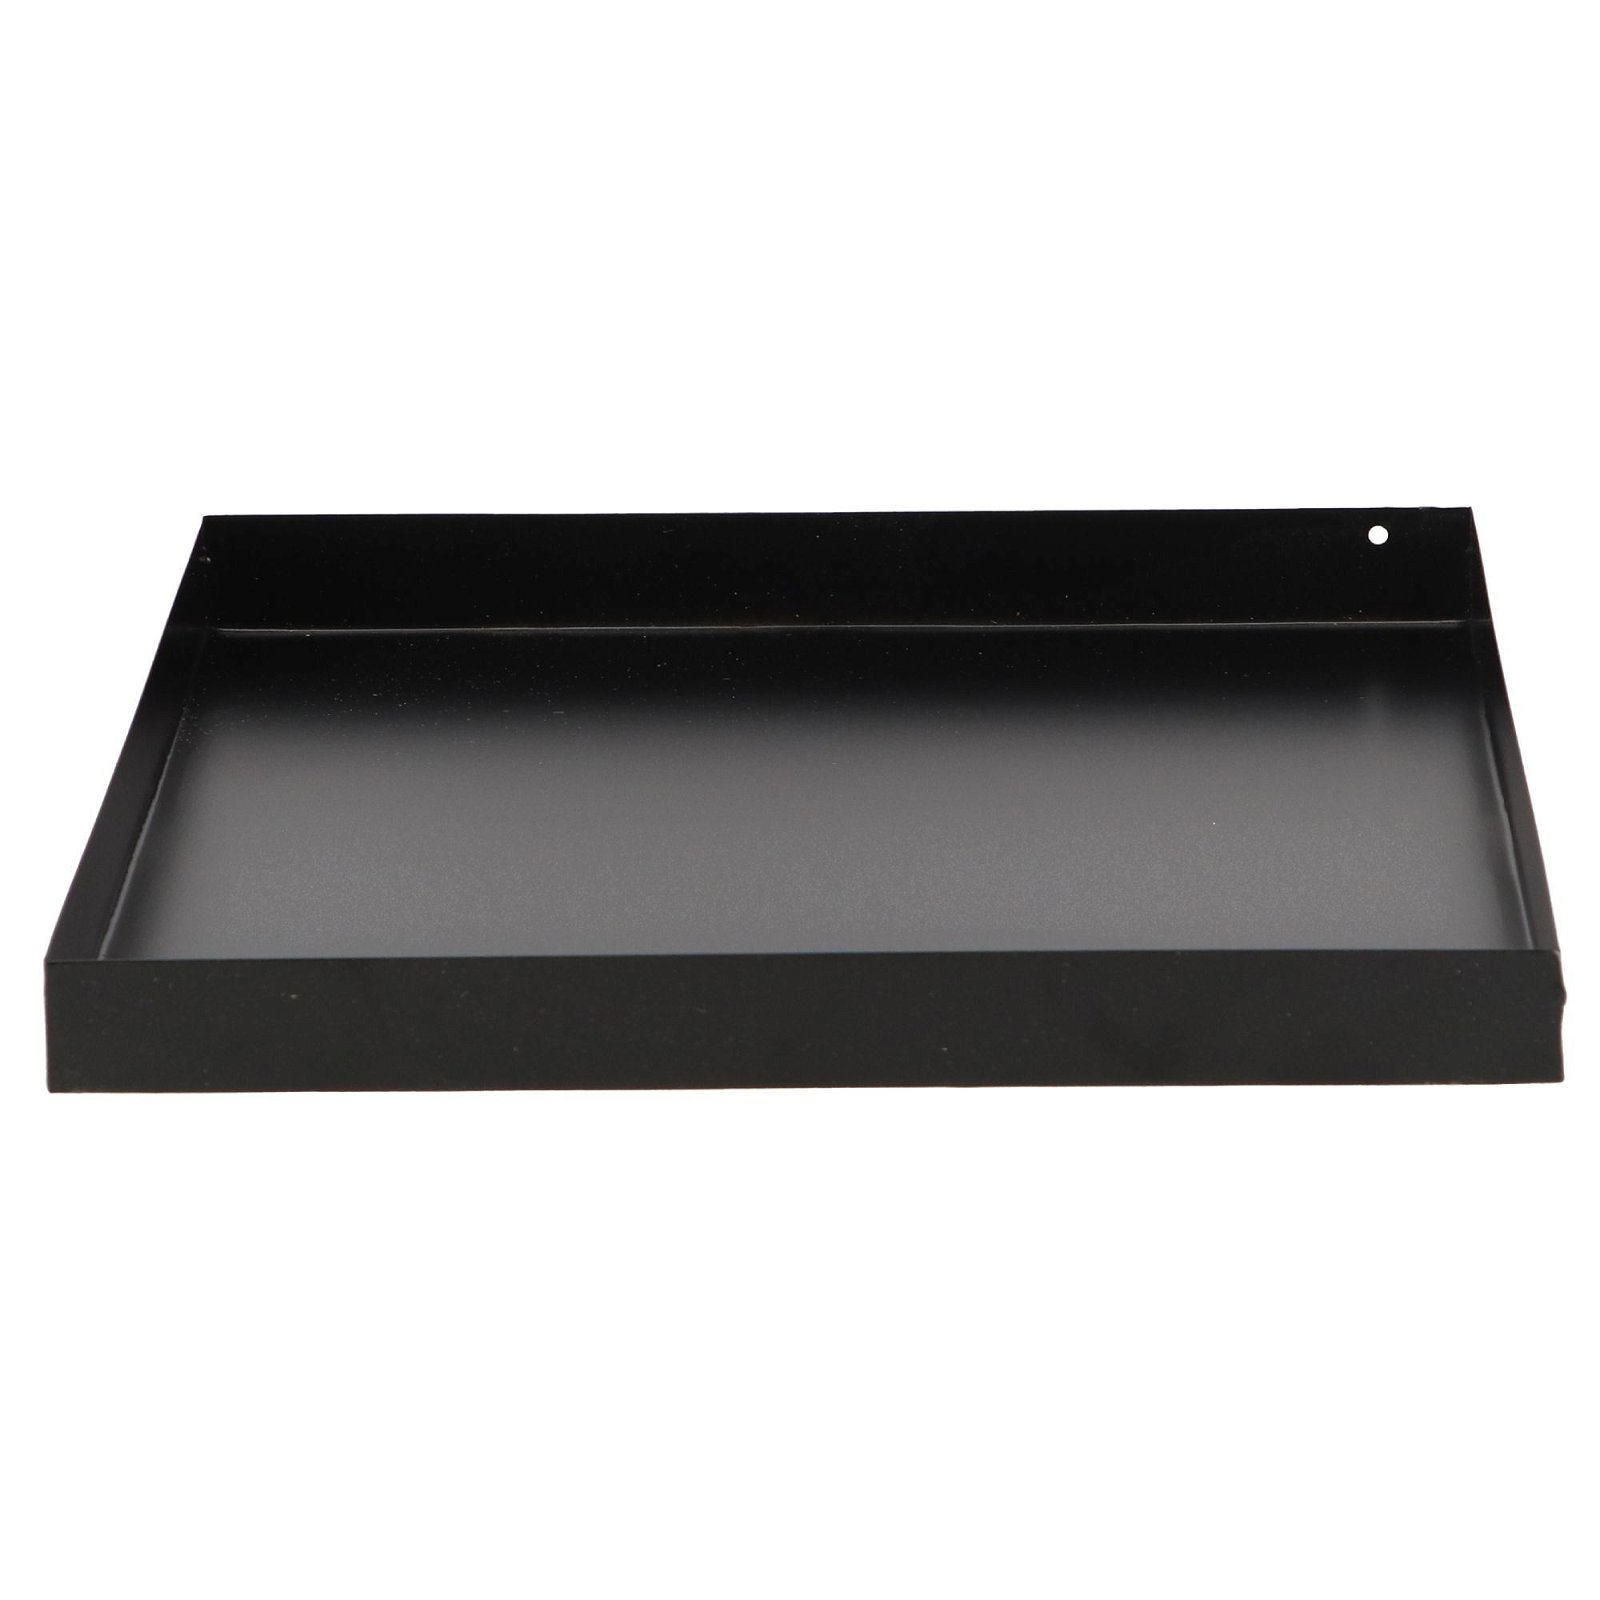 Bodenplatte für Feuerkorb, schwarz, Weichstahl, ca. 32 x 32 x 3 cm, 0,65 kg